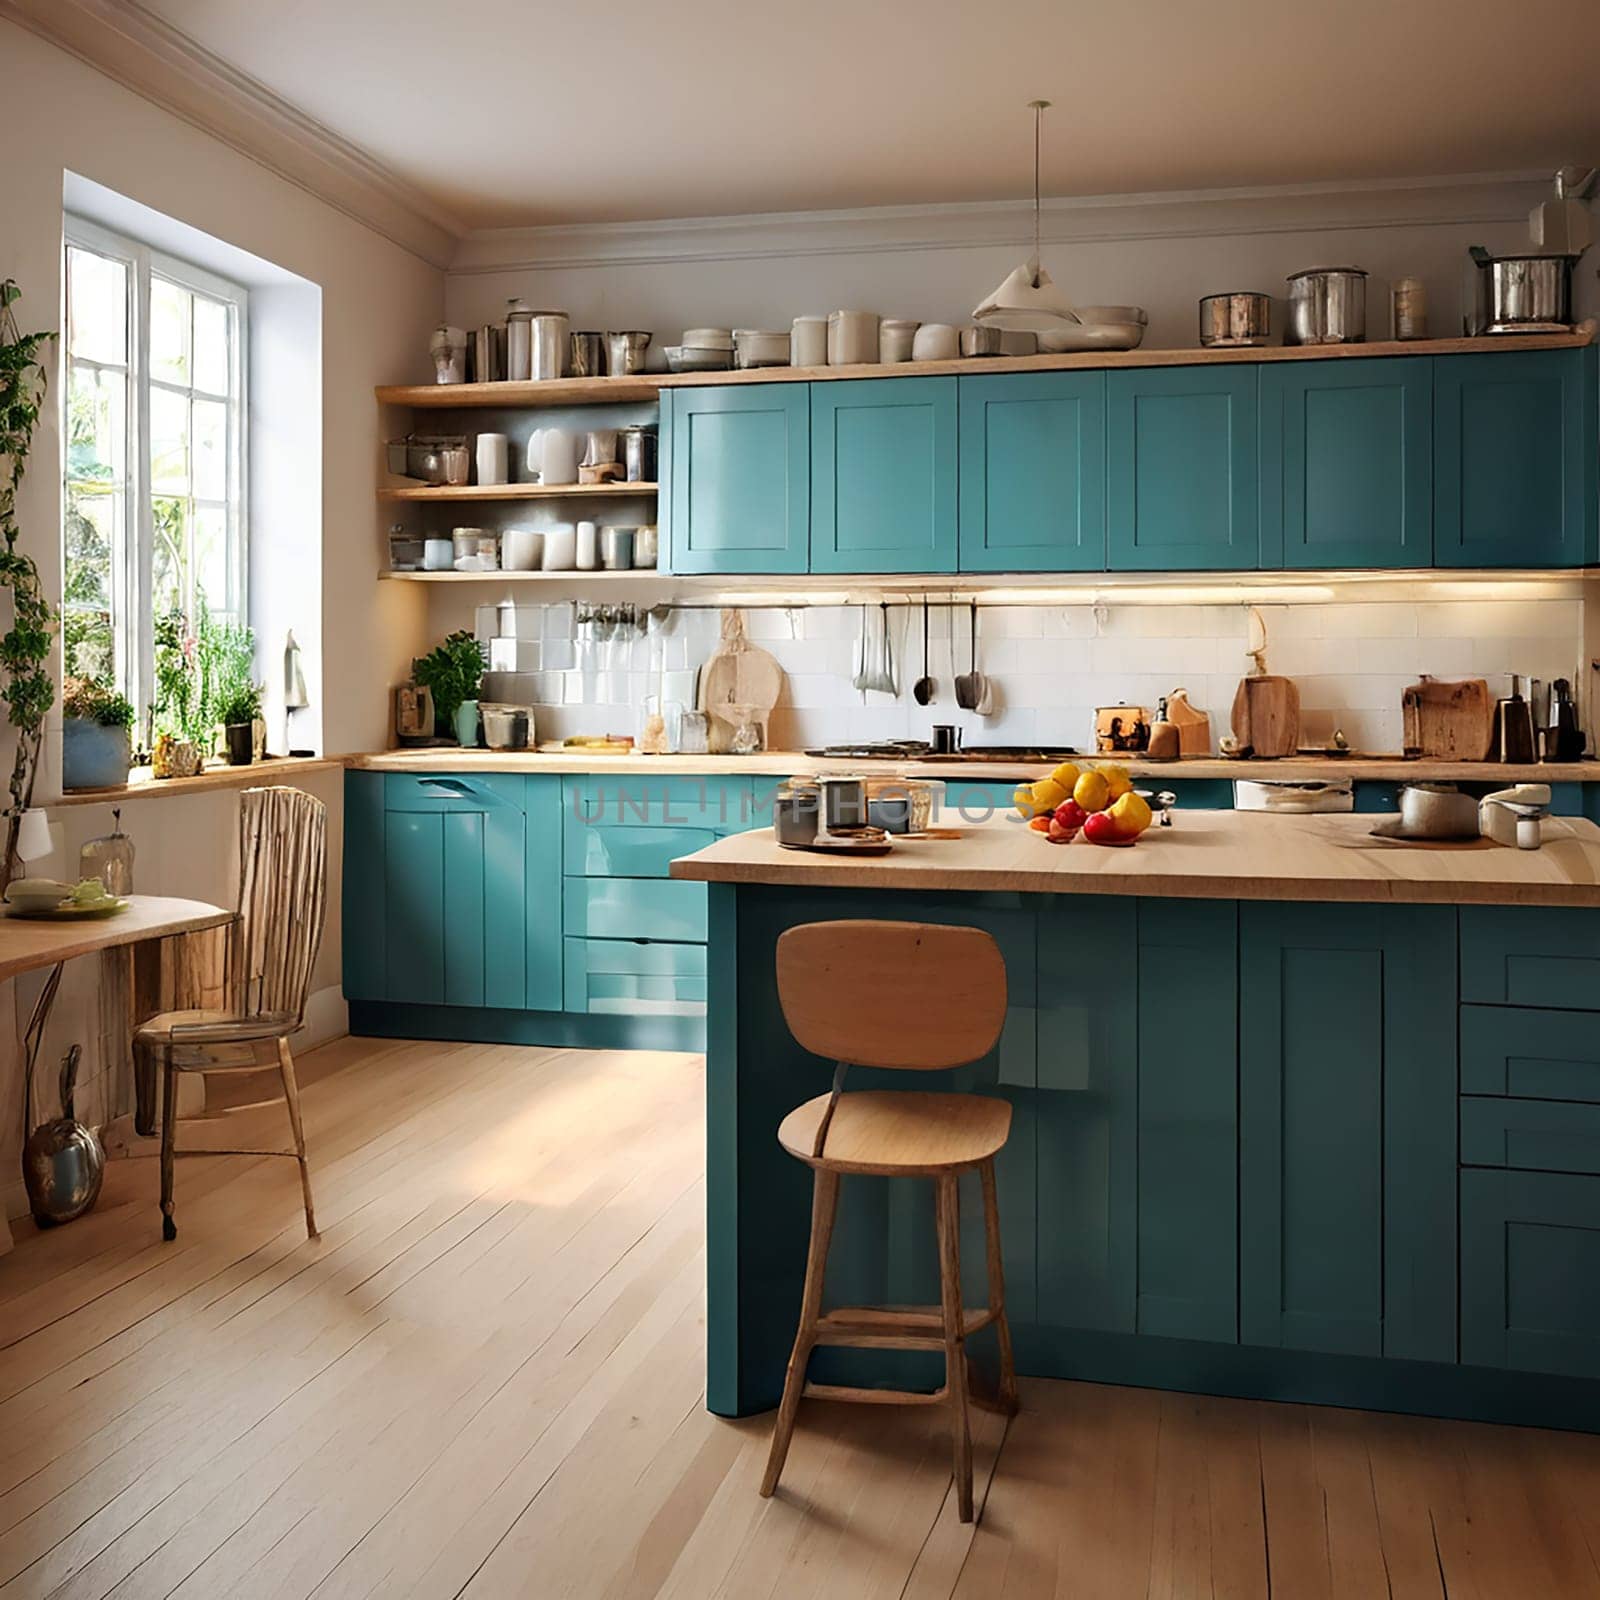 The Beauty of Simplicity: Minimalist Kitchen Design Ideas